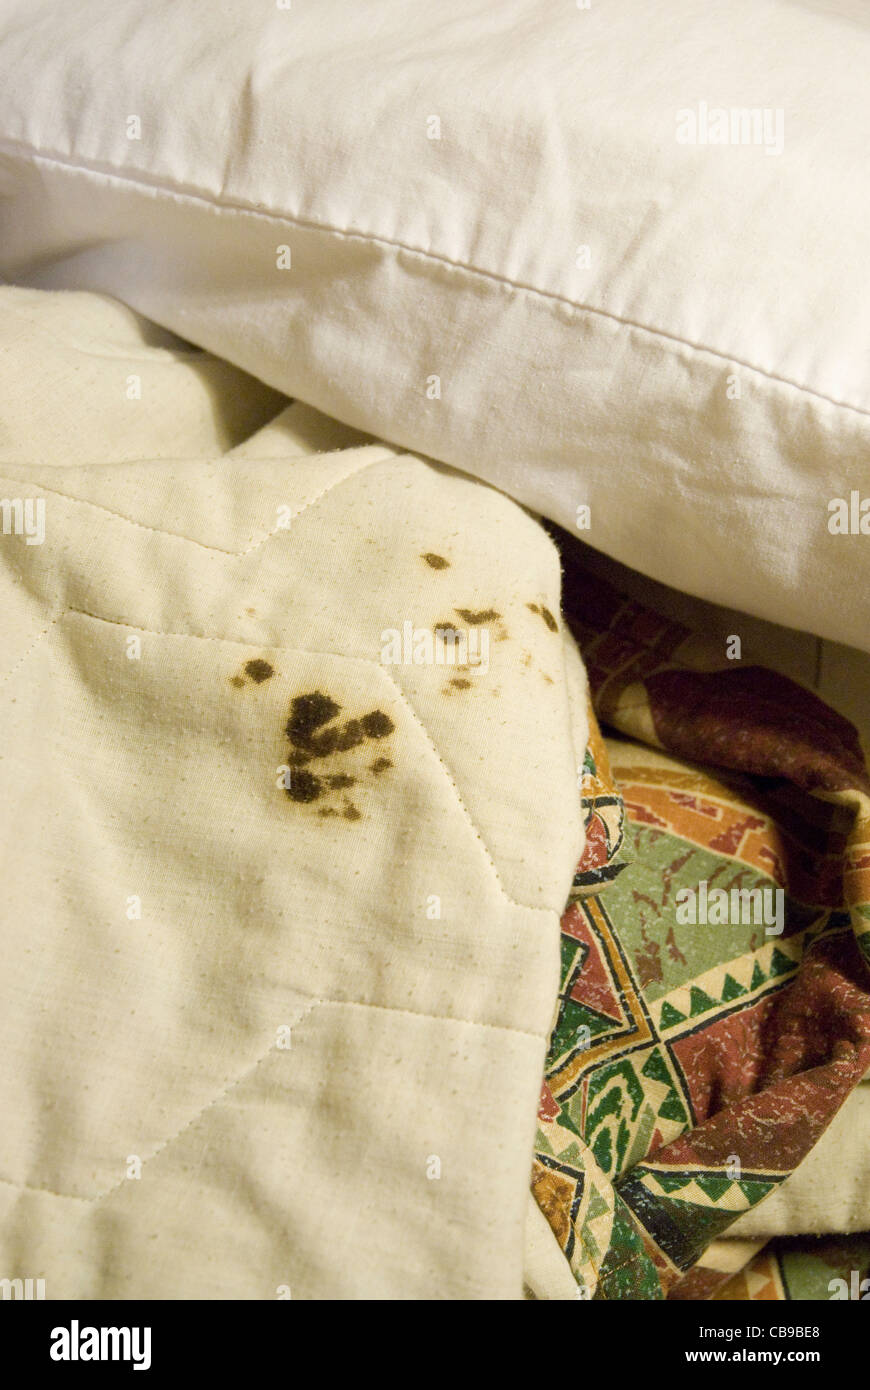 El problema de la limpieza en las habitaciones del hotel es evidenciado por manchas de sangre seca en el edredón en una habitación de motel de Texas Foto de stock